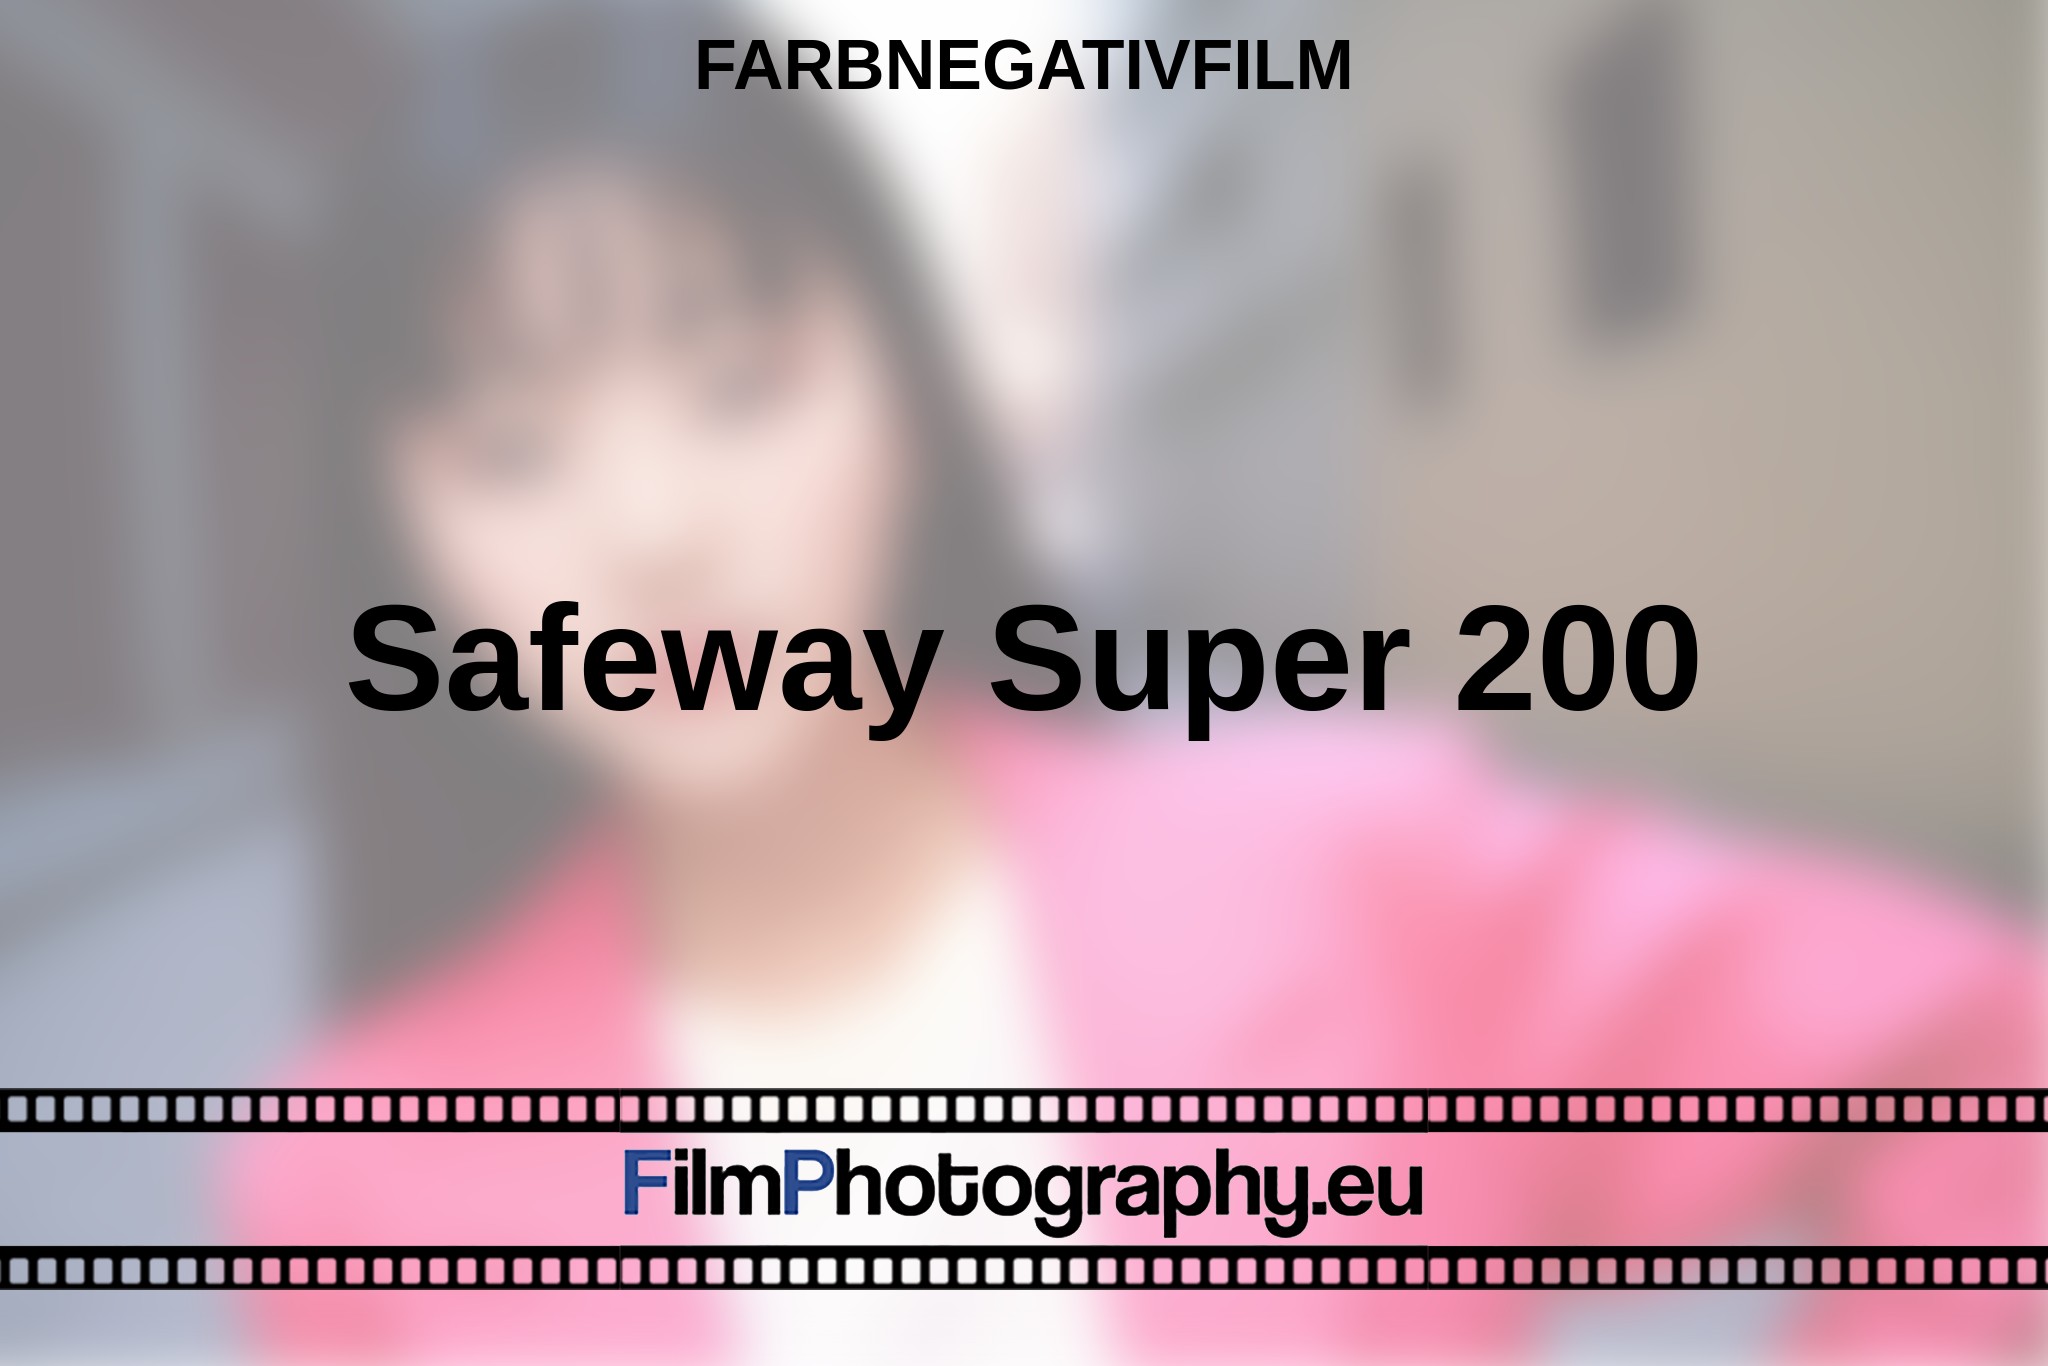 safeway-super-200-farbnegativfilm-bnv.jpg